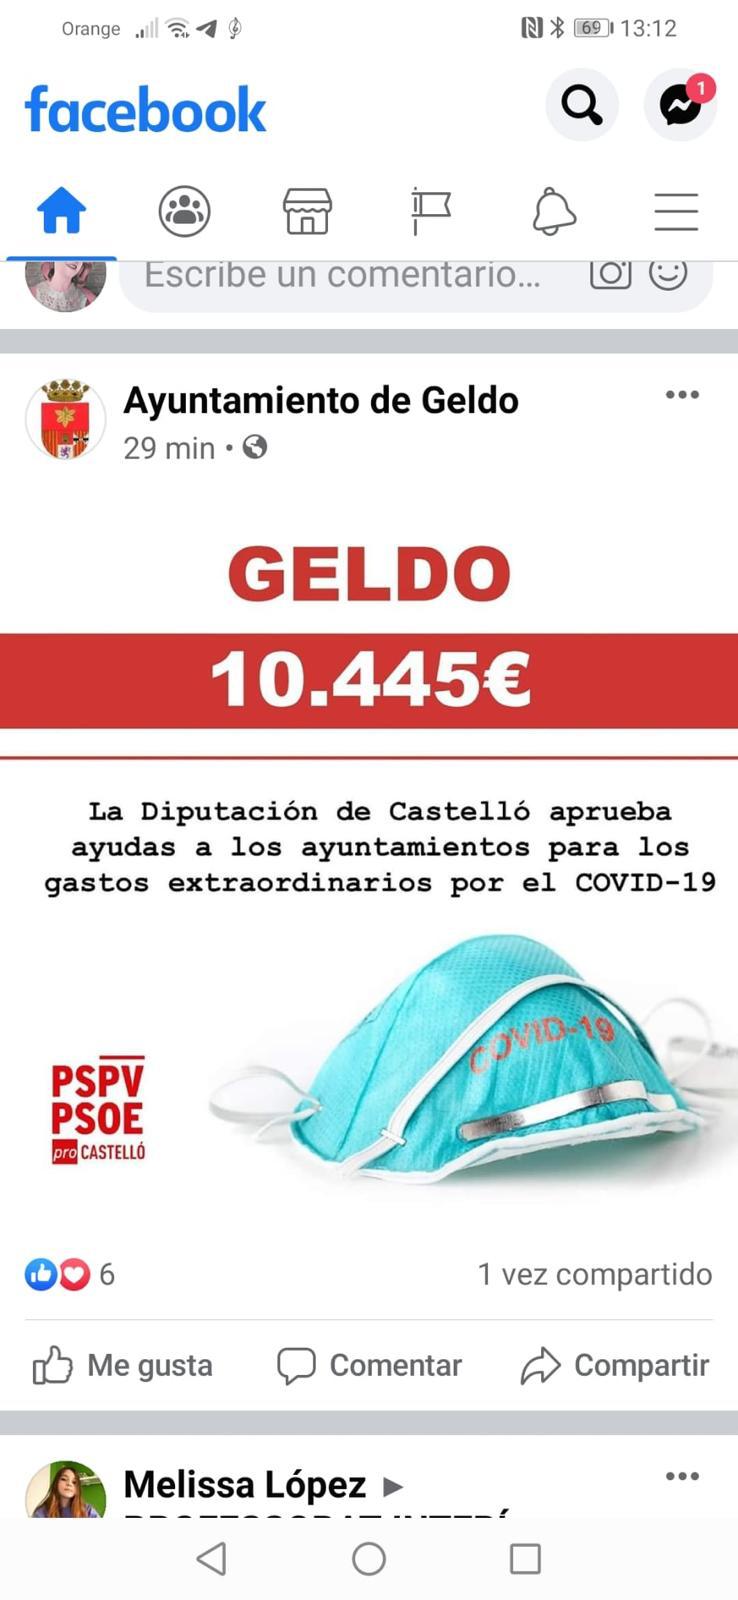 El PP acusa al PSOE de usar el ayuntamiento de Geldo para hacer propaganda socialista